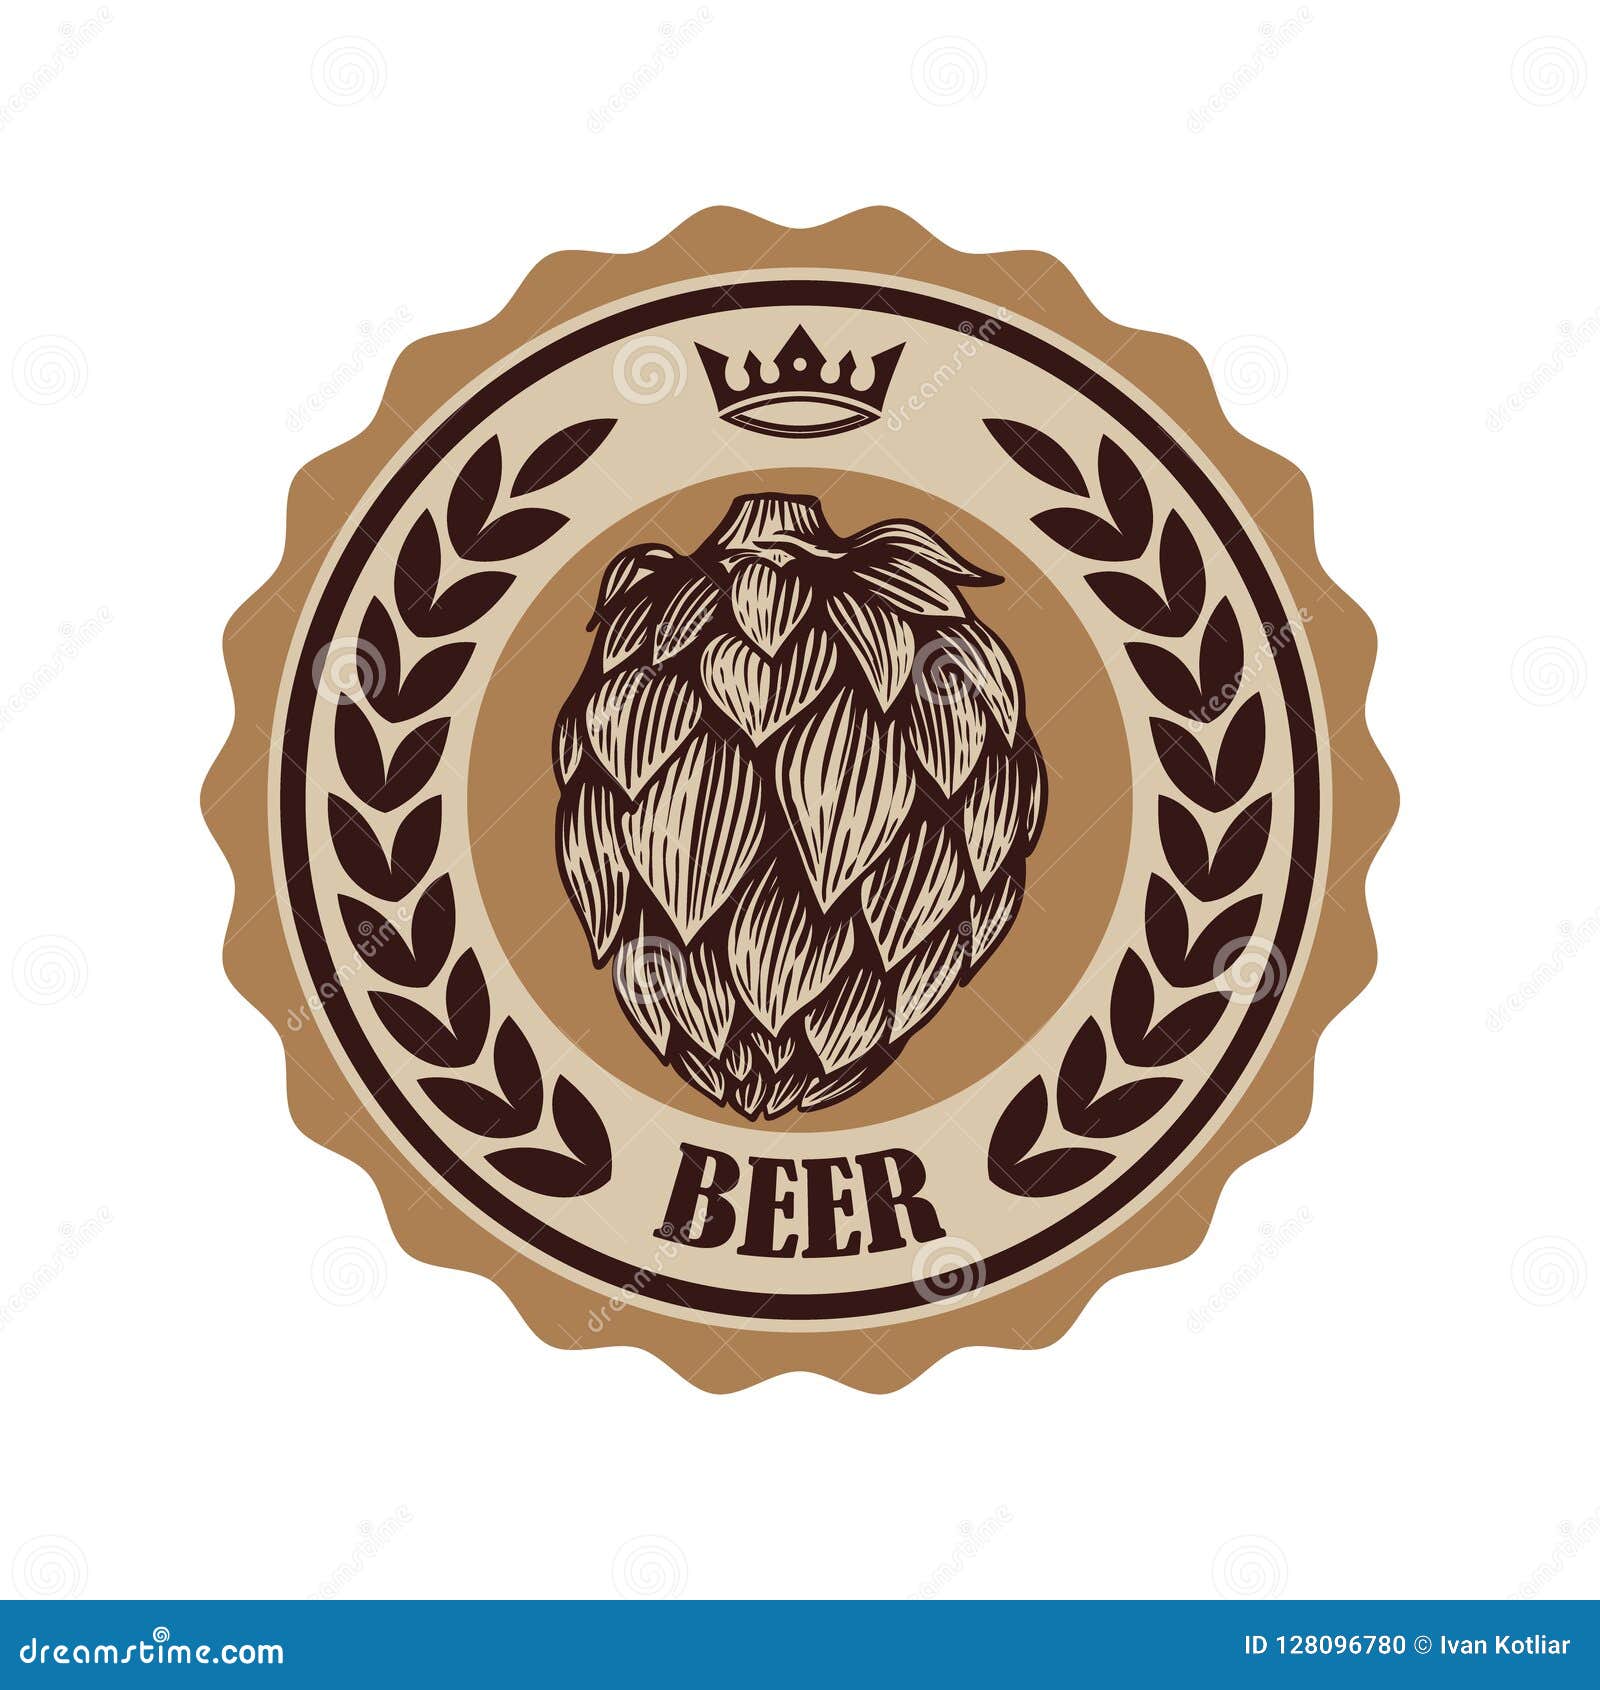 Download Vintage Beer Label. Design Elements For Logo, Label, Emblem, Sign, Menu. Stock Vector ...